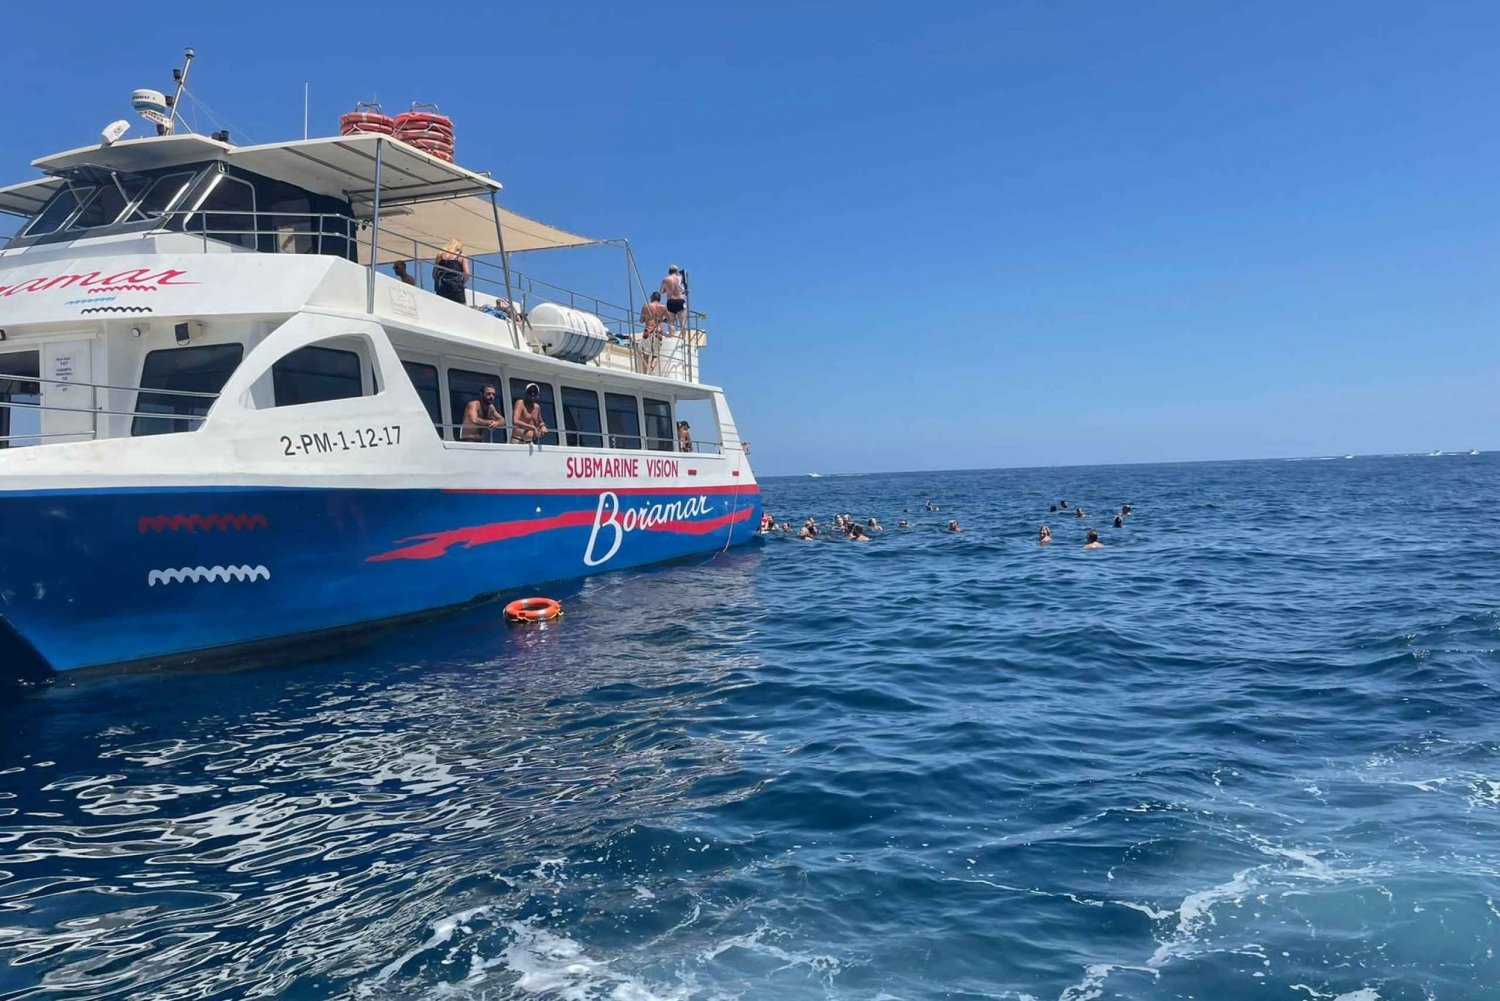 Javea: Motorisert katamarantur til øya Portitxol med Paella